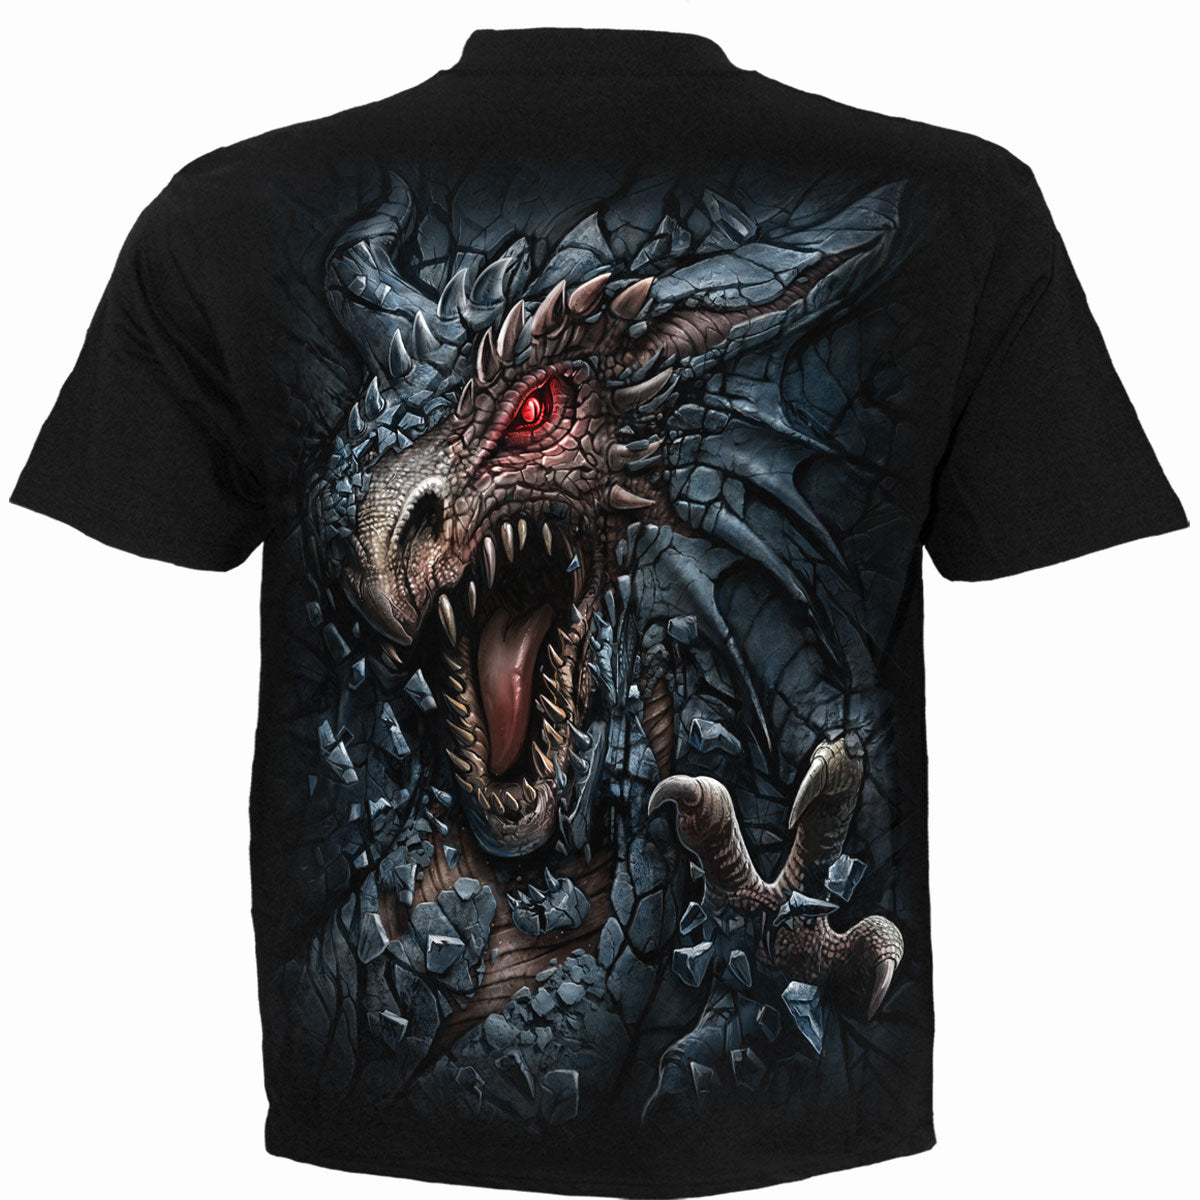 DRAGON'S LAIR - T-shirt pour enfants noir